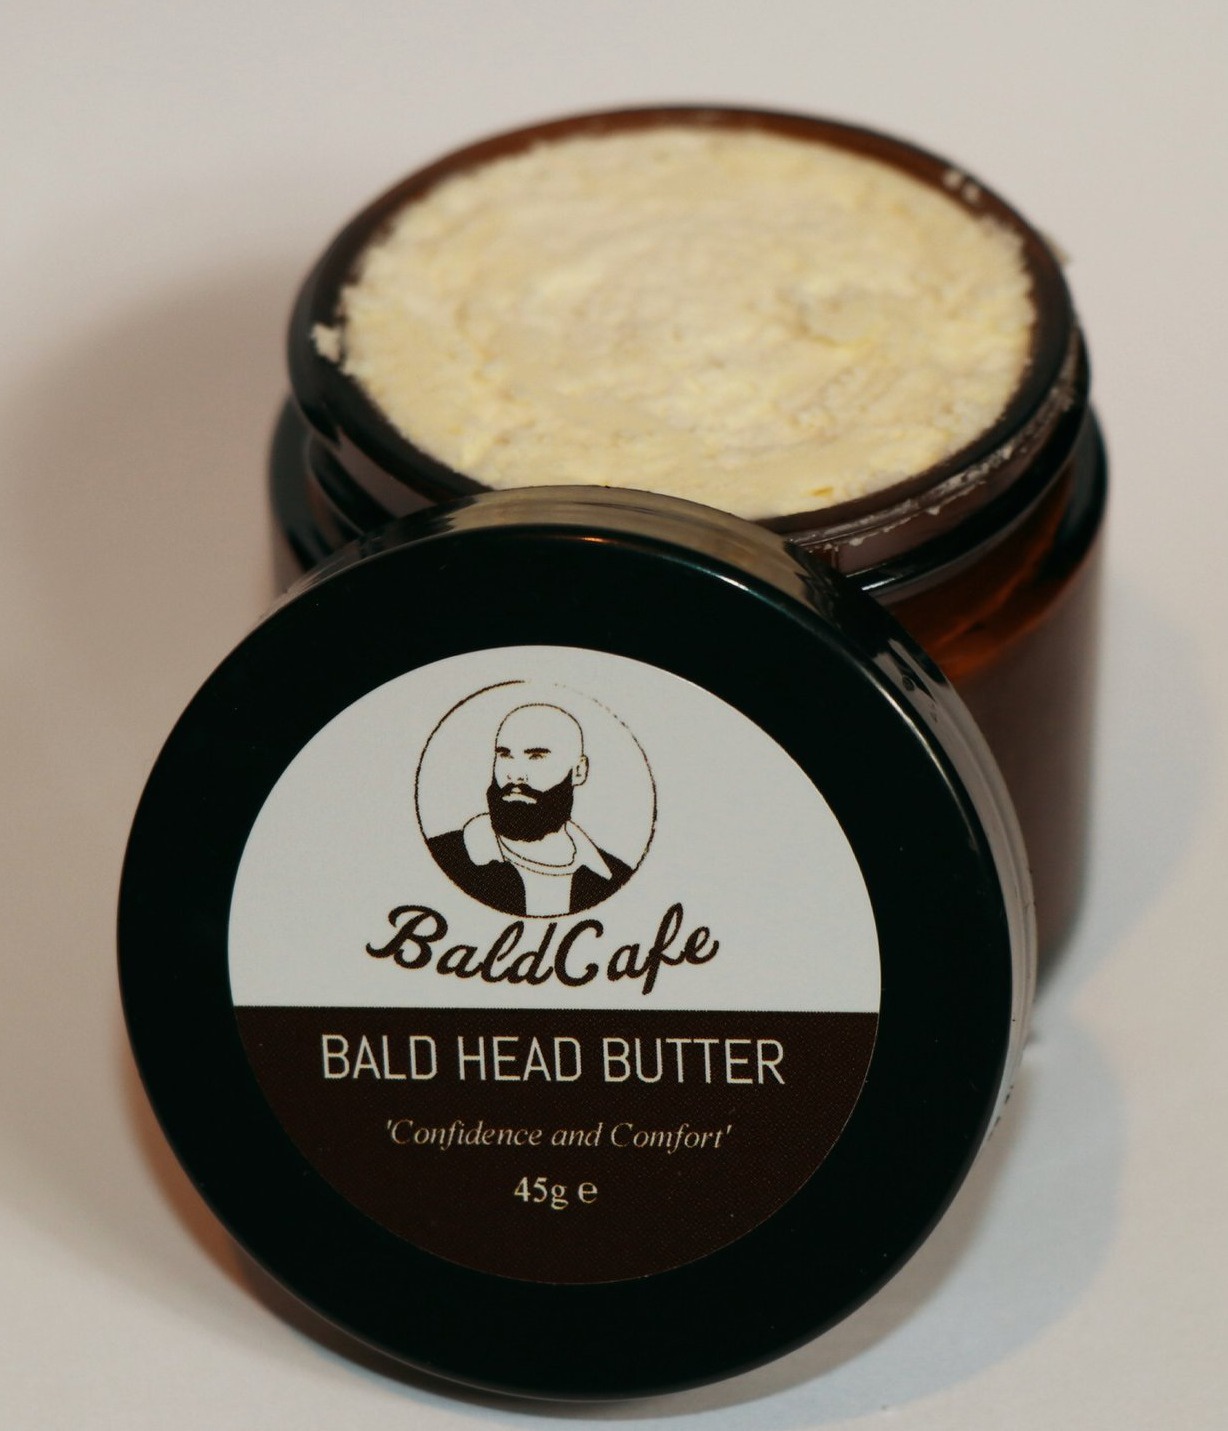 Bald cafe Bald Head Butter